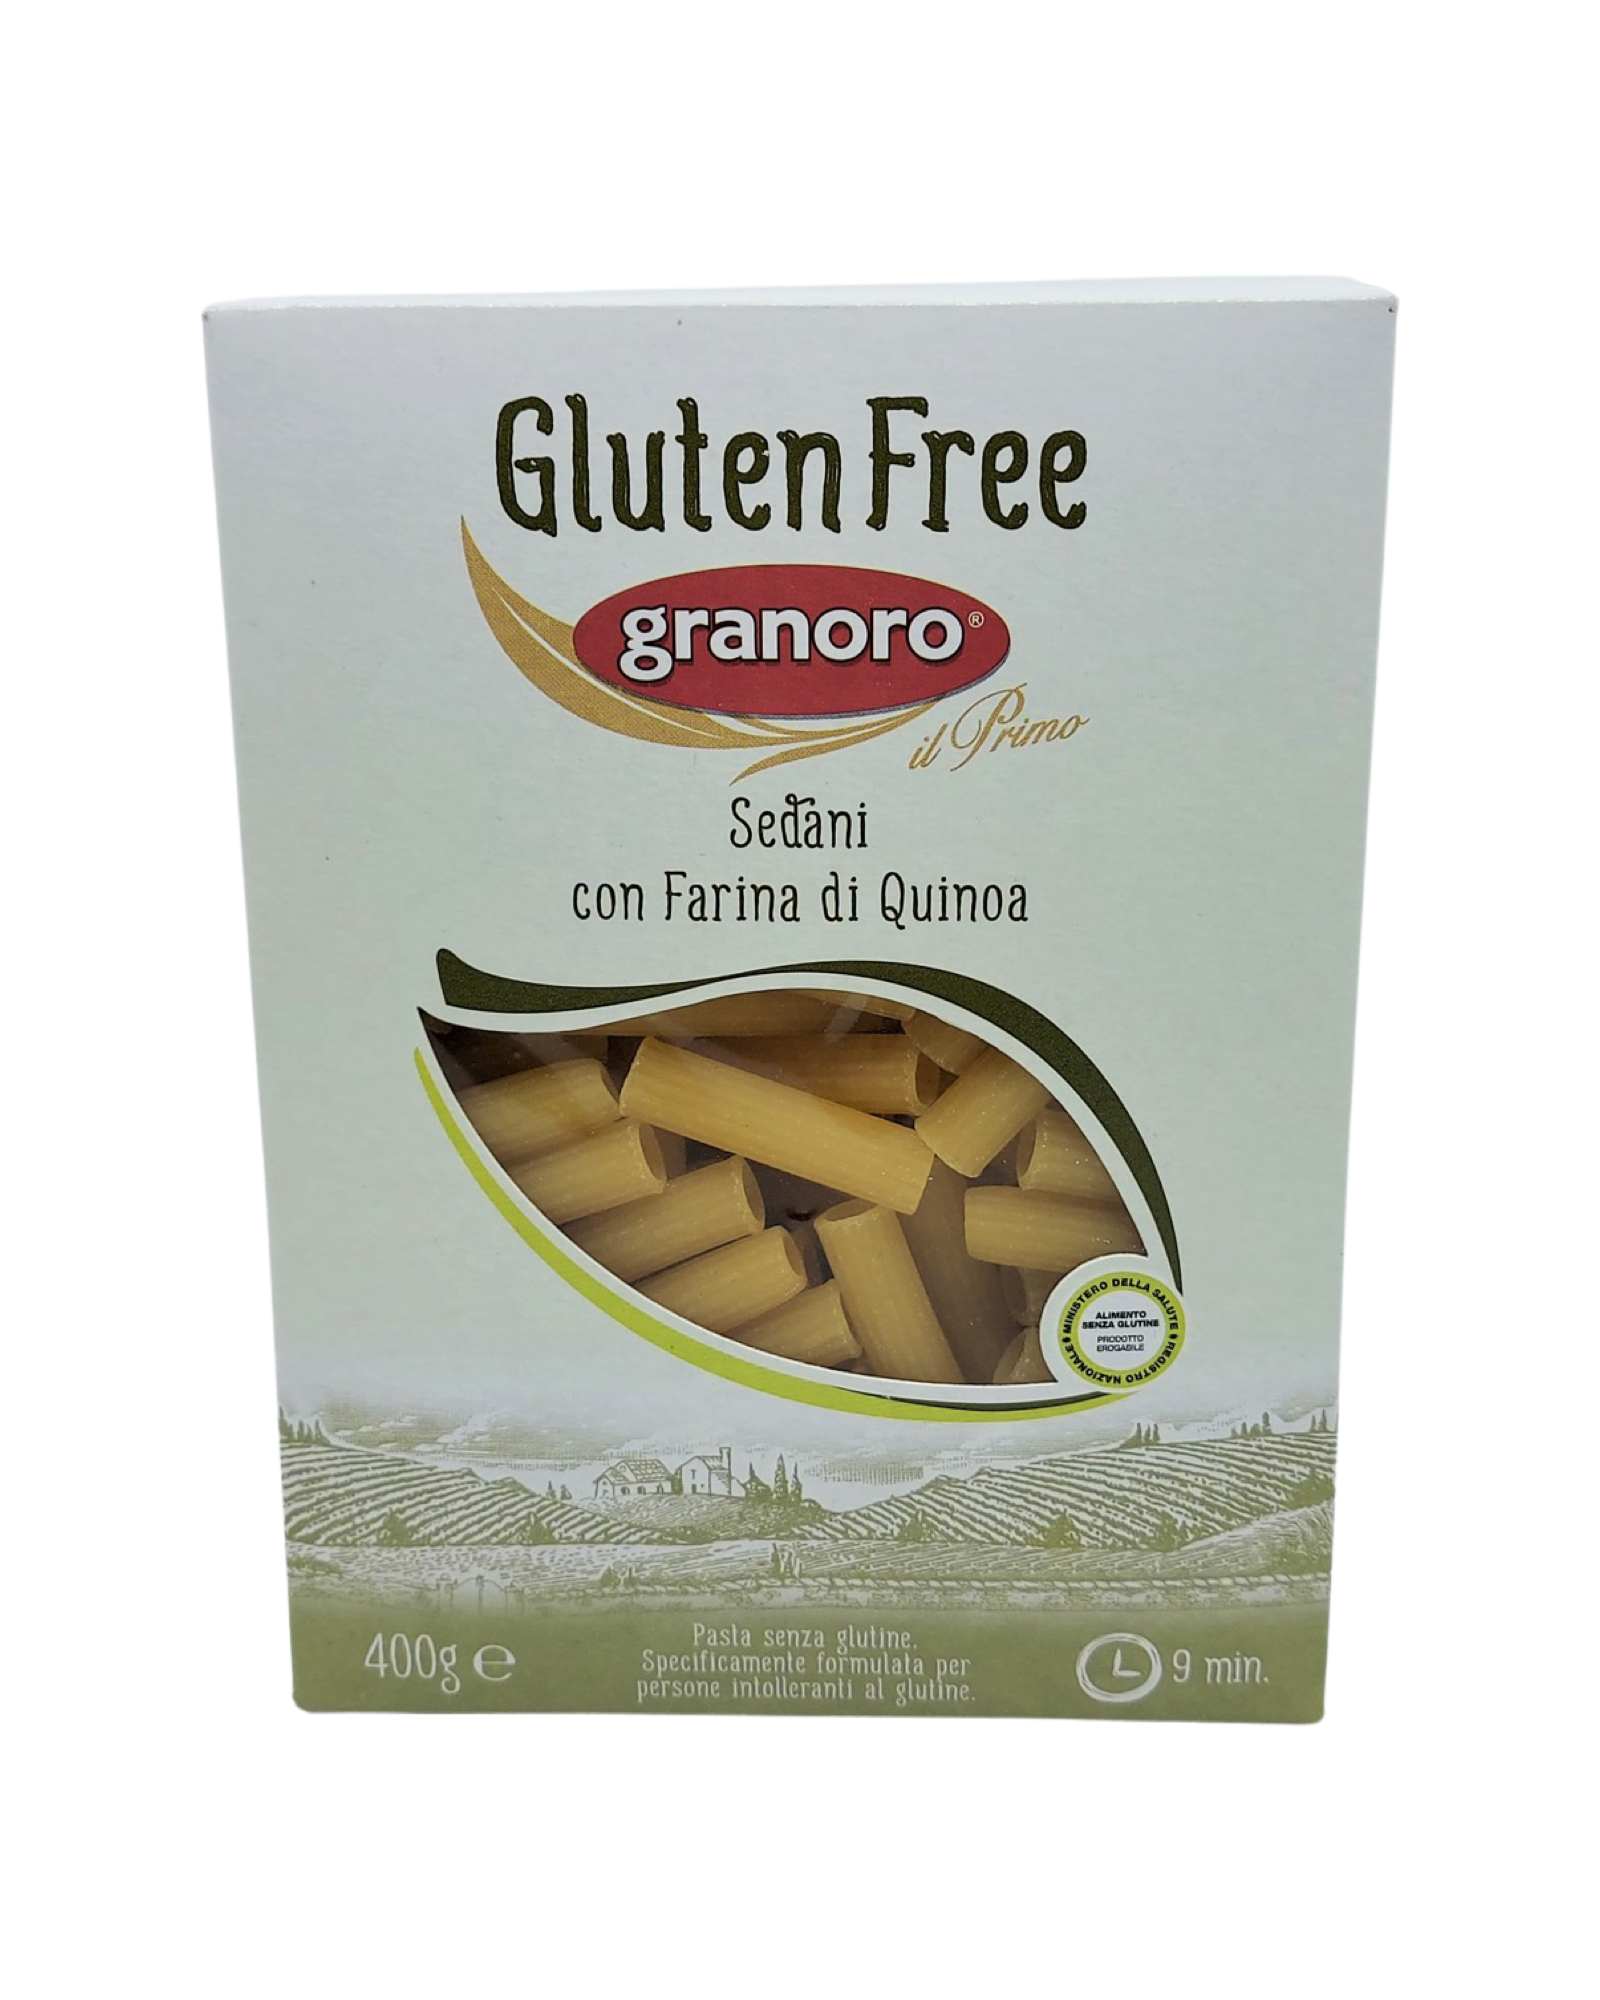 Gluten free sedani _Quinoa pasta